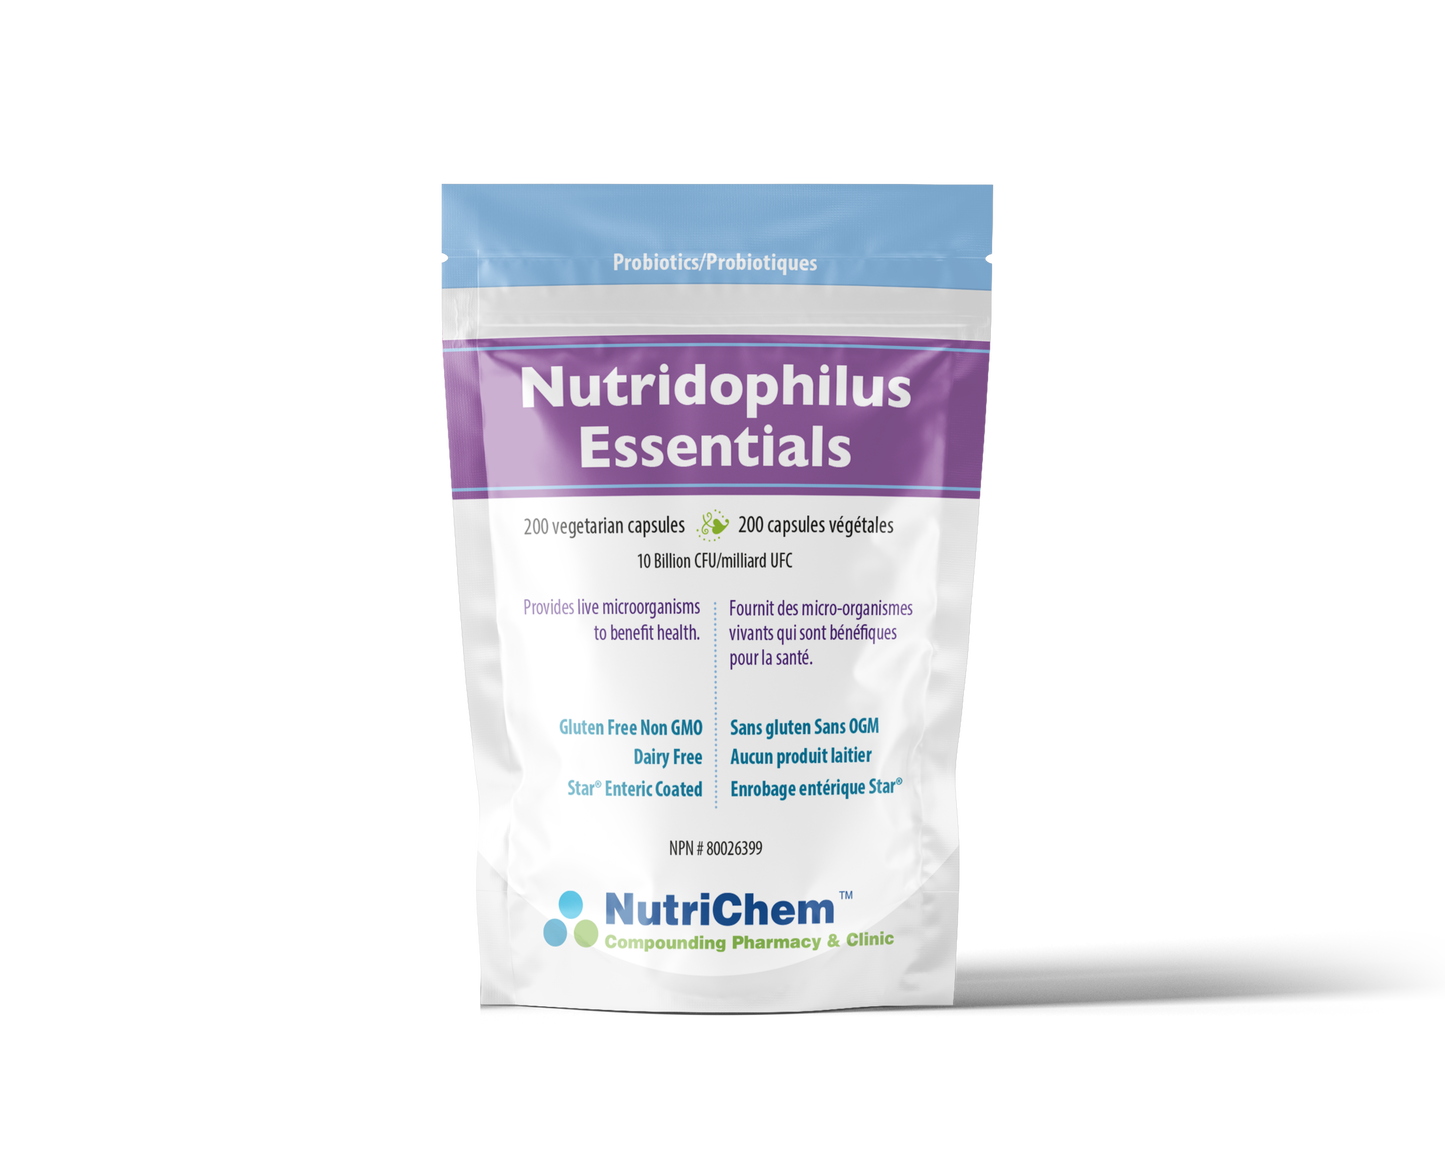 Nutridophilus Essentials